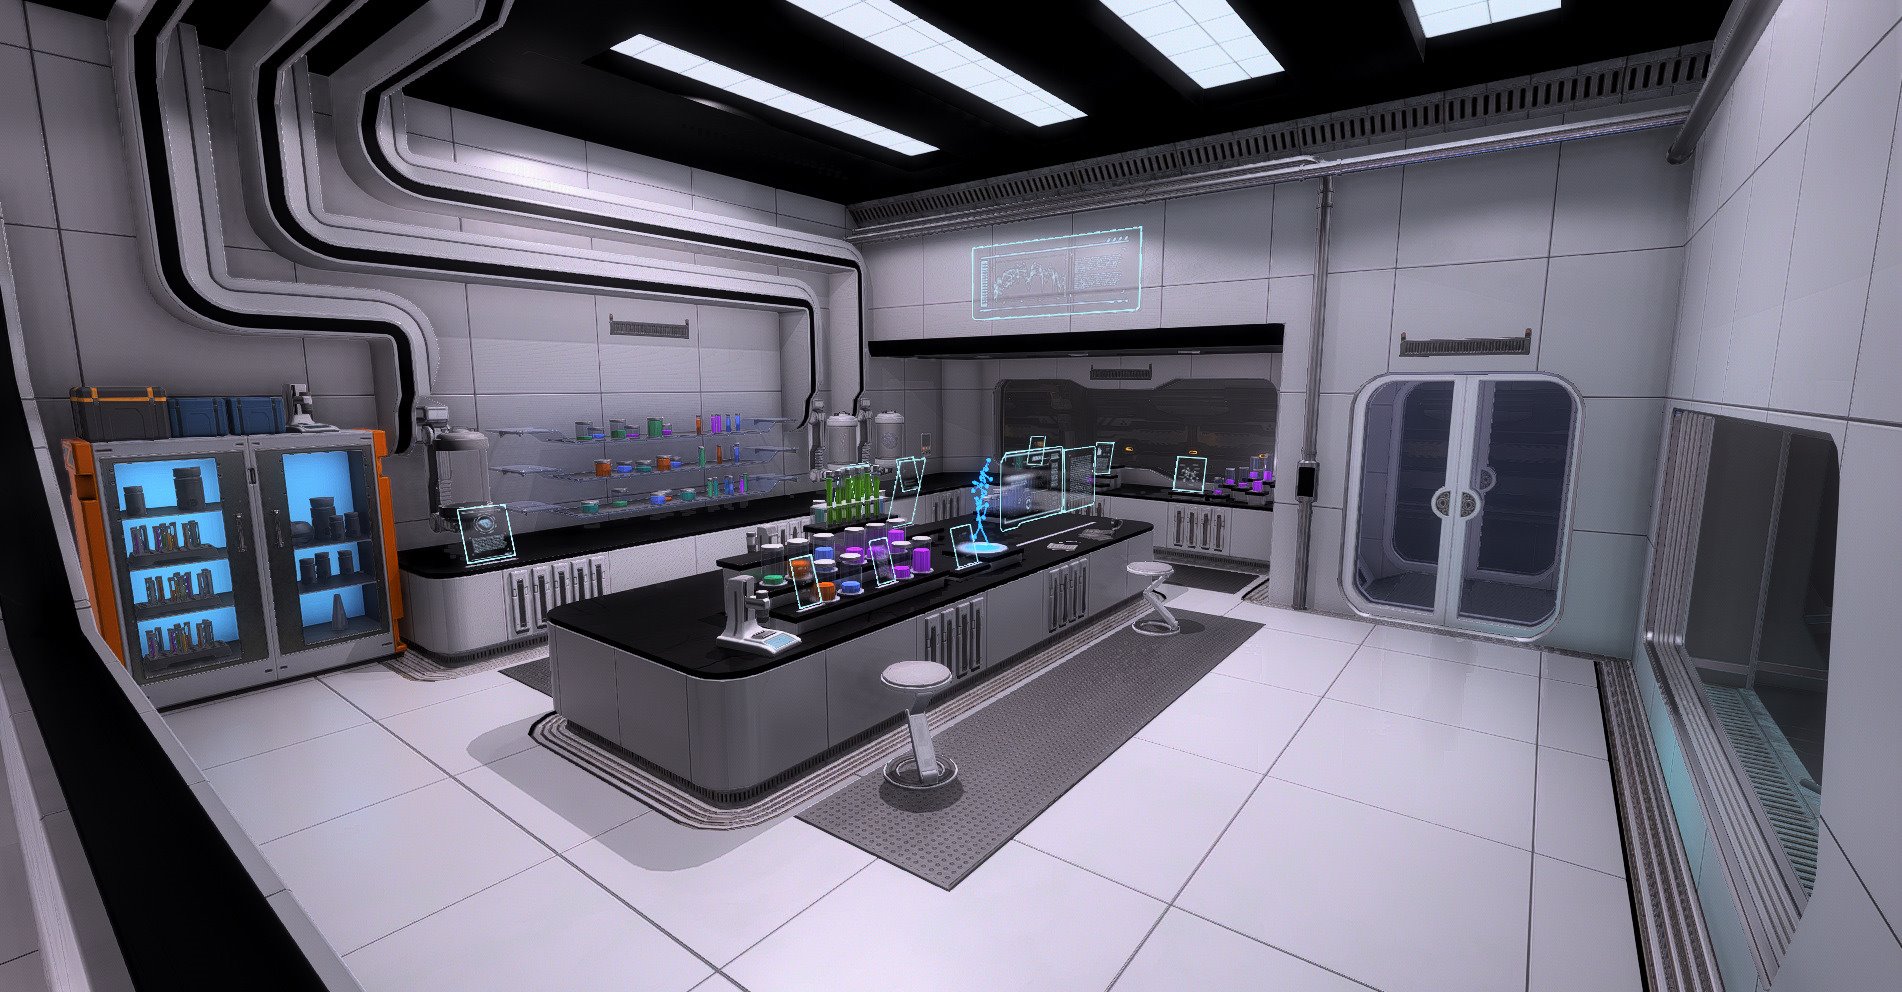 The furthest station. Sci Fi кухня. Кухня в стиле космического корабля. Интерьер космической станции. Столовая на космическом корабле.